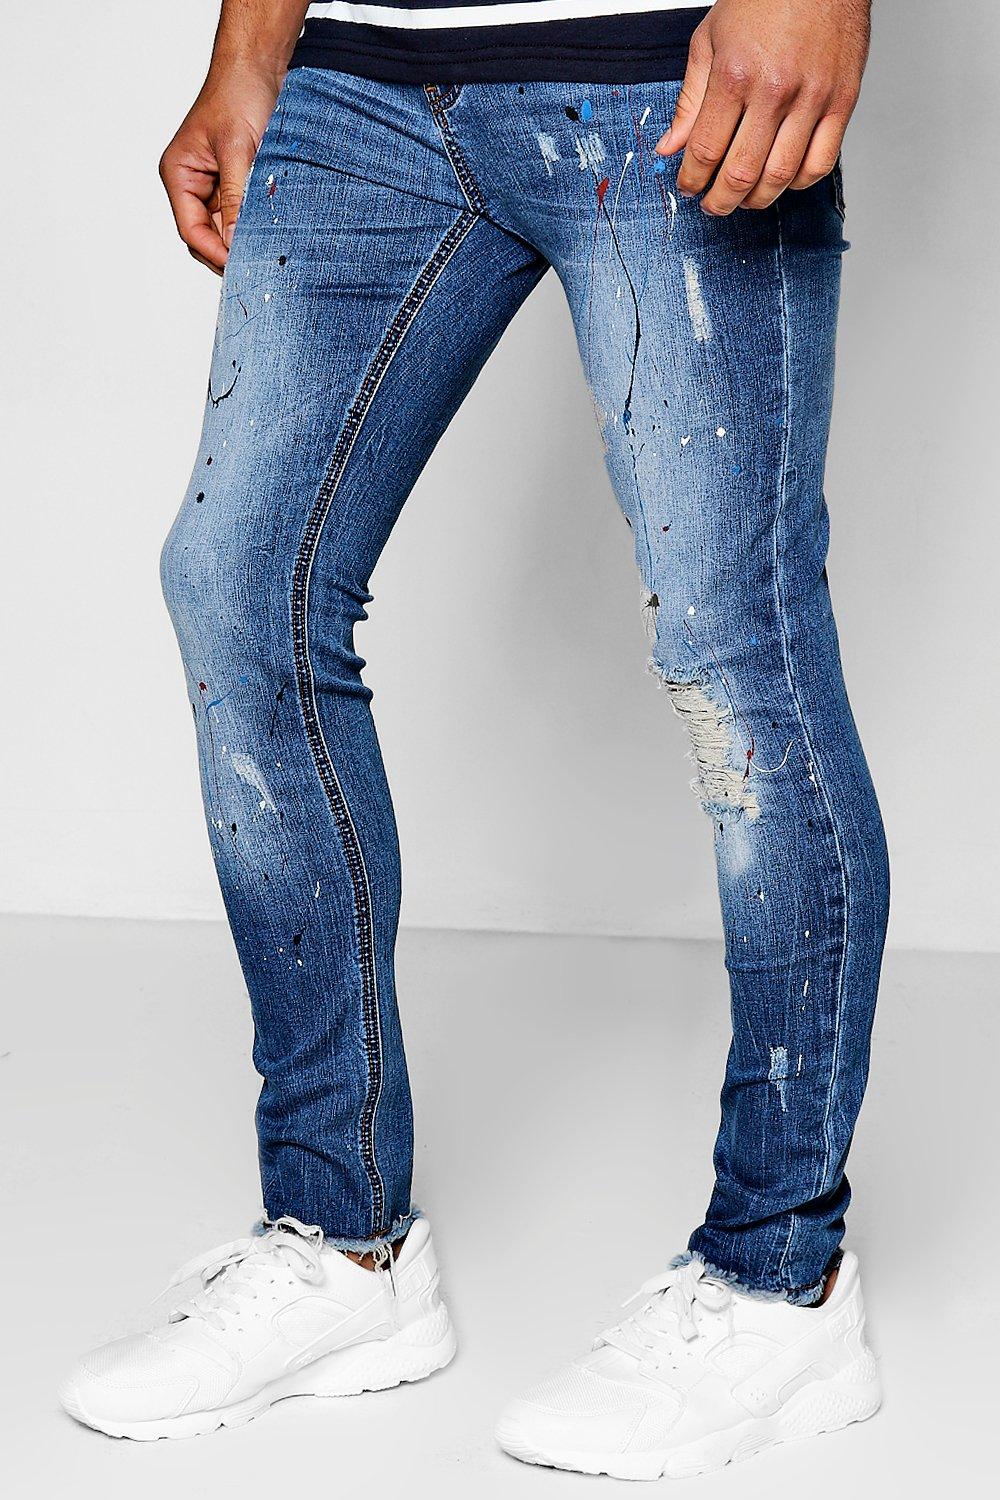 blue super skinny jeans mens